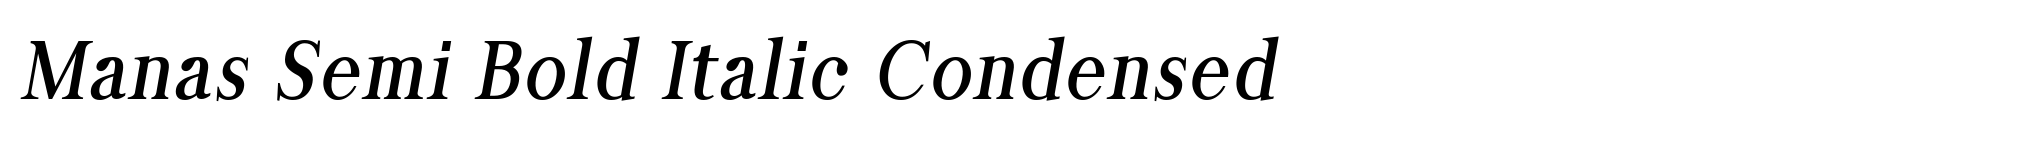 Manas Semi Bold Italic Condensed image